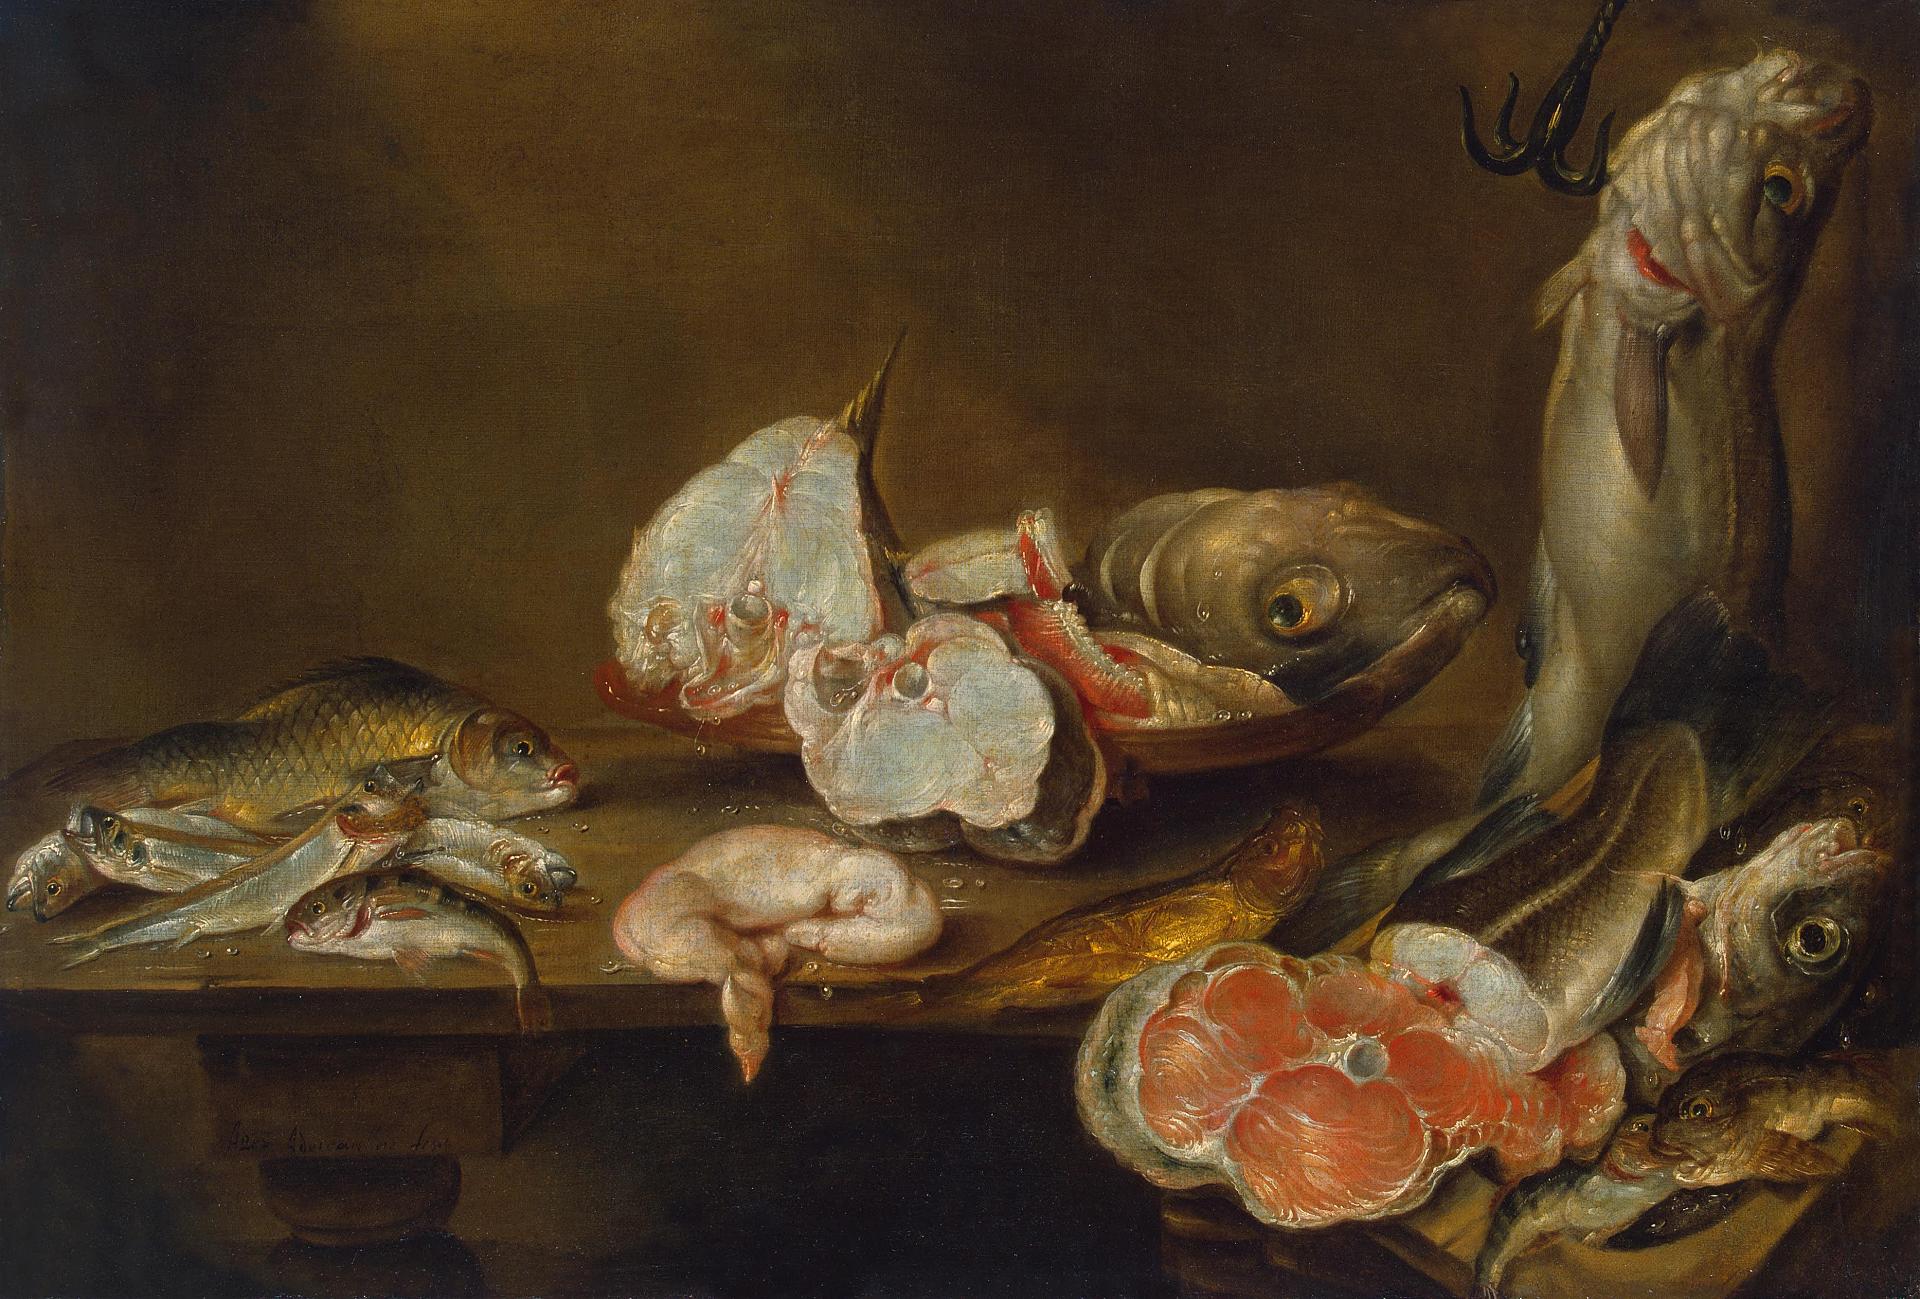 Александр Адриансен. "Рыбы". 1643. Эрмитаж, Санкт-Петербург.